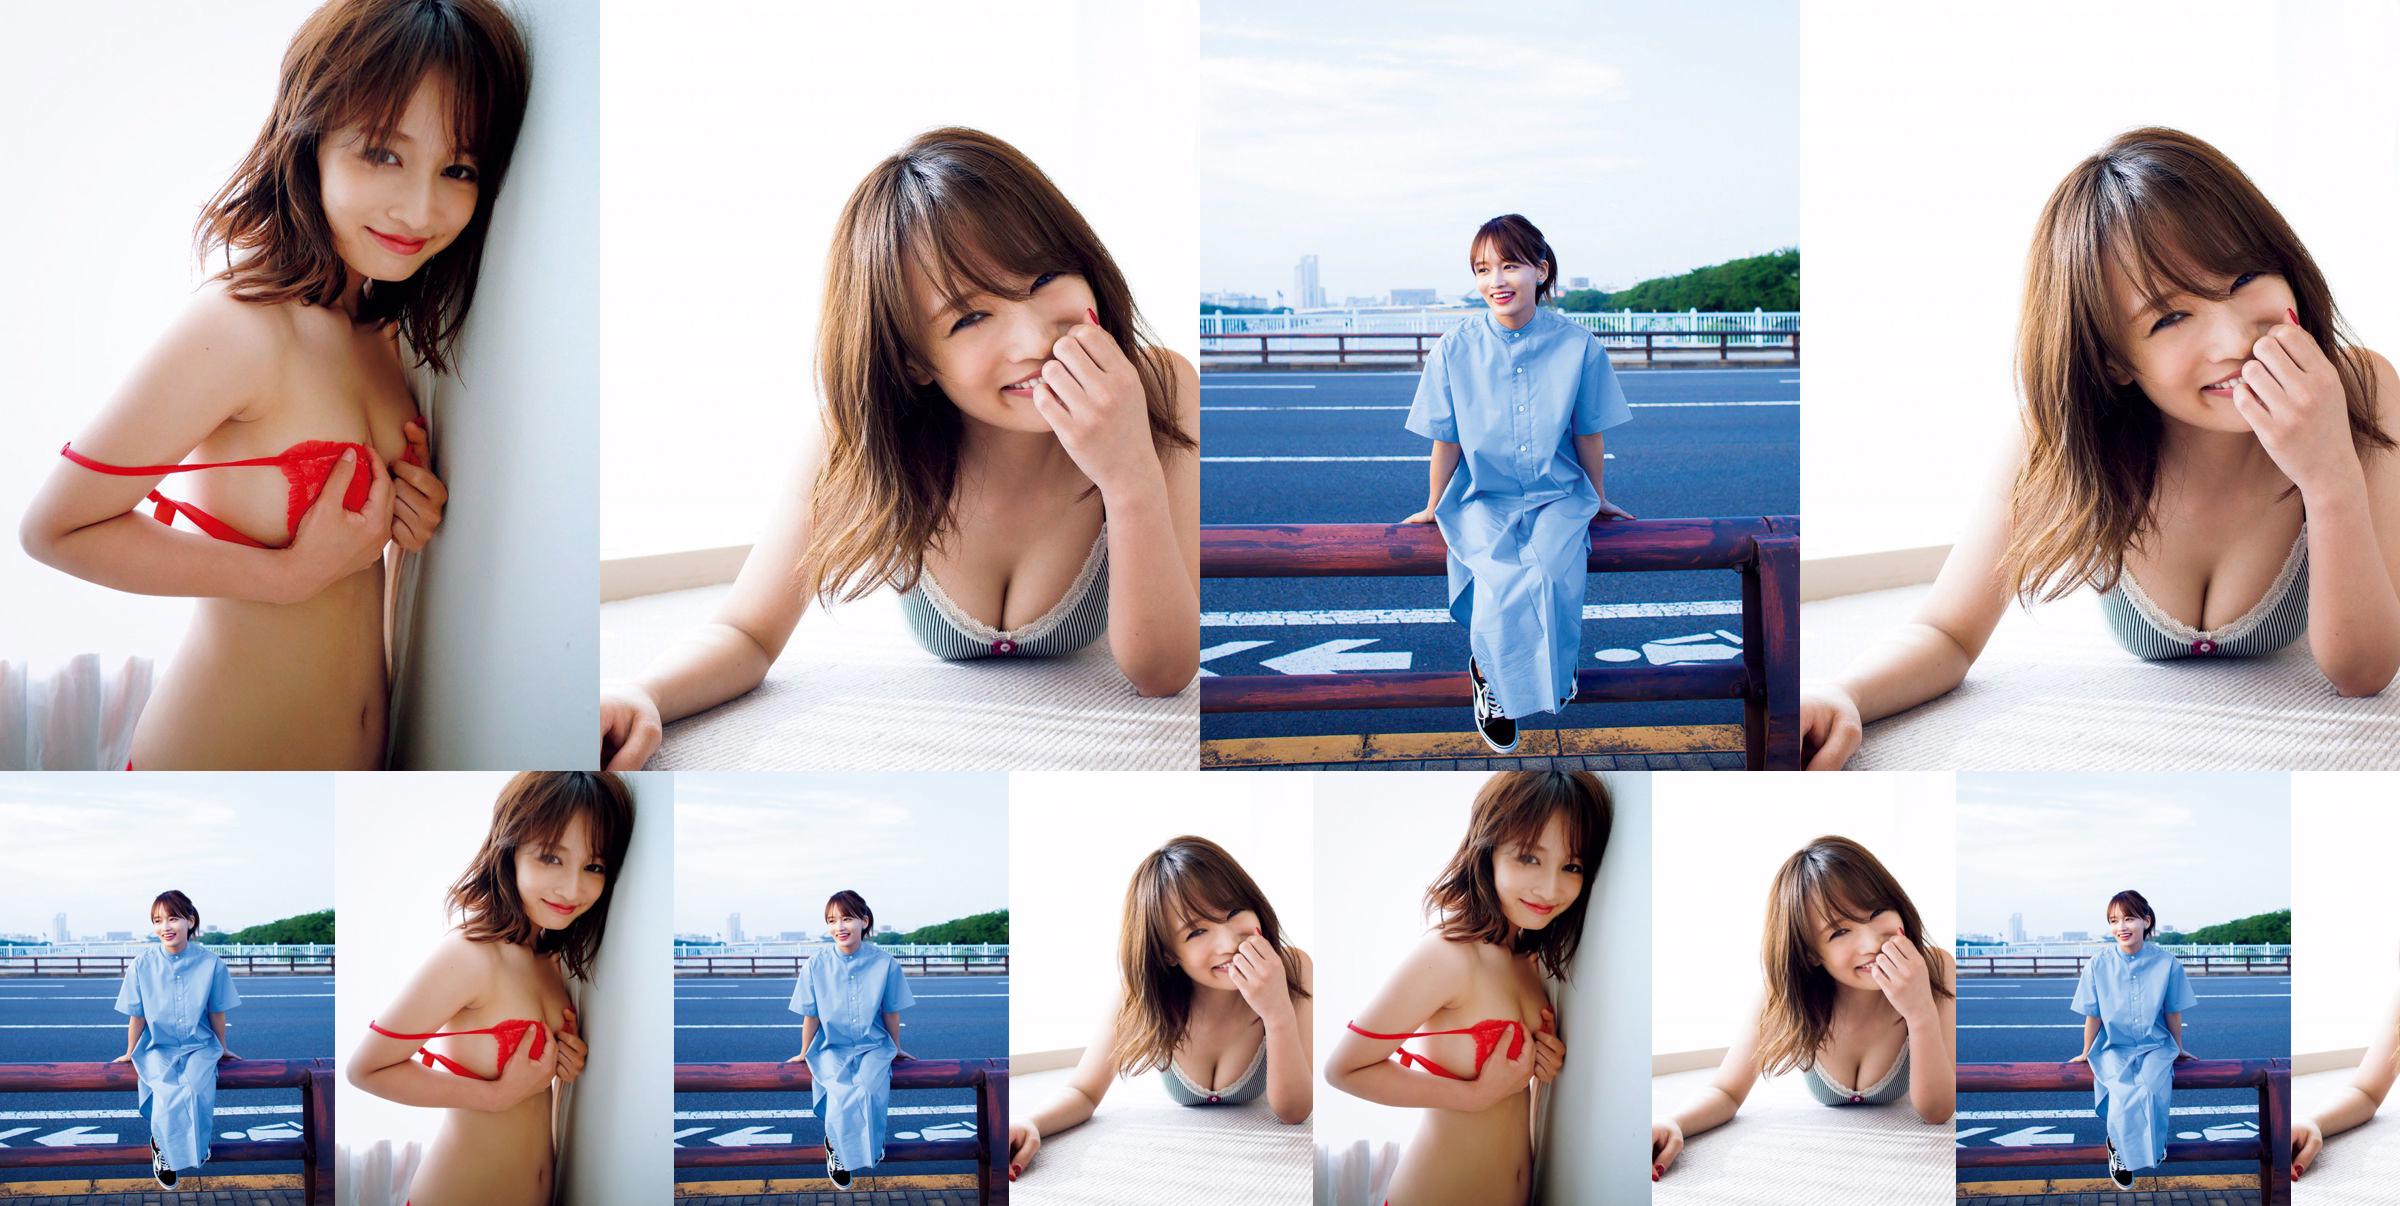 [VIERNES] Mai Watanabe "Copa F con un cuerpo delgado" foto No.6a6989 Página 2